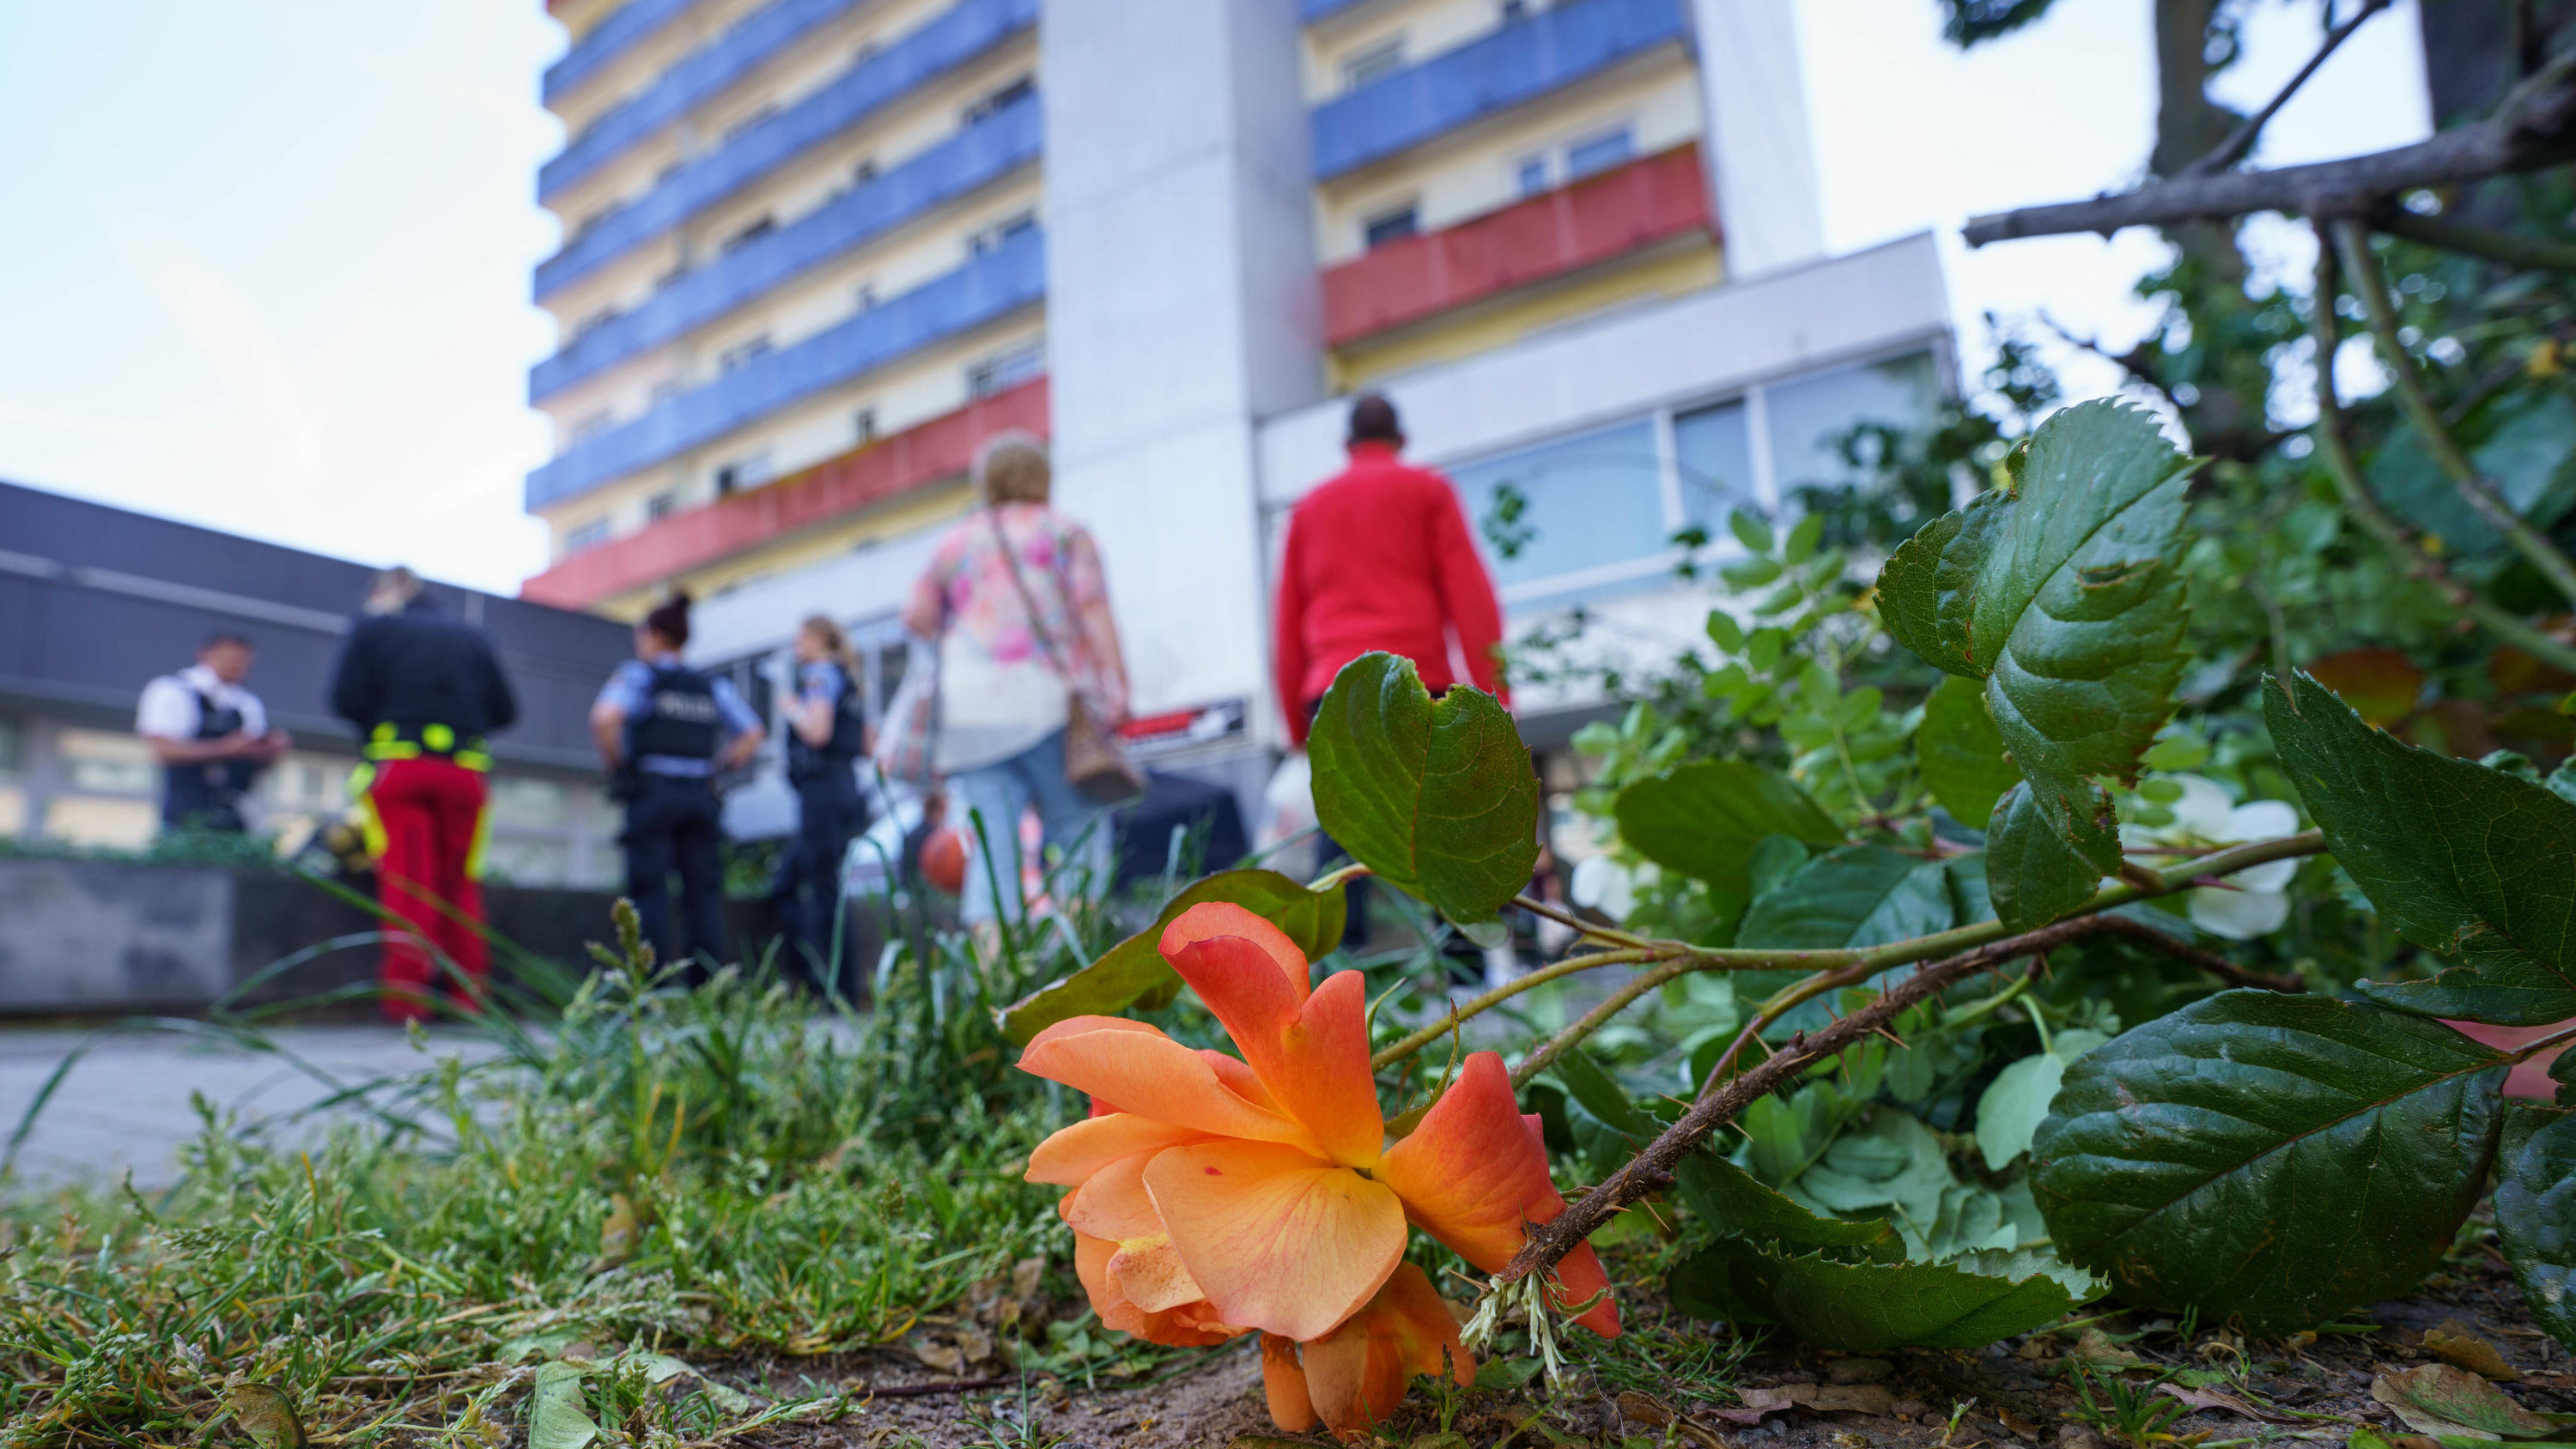 11.05.2022, Hessen, Hanau: Eine abgeschnittene Rose liegt an einem Hochhaus, nachdem die Spurensicherung der Polizei zum Zweck der besseren Suche die Blumen und Sträucher davor abgeschnitten hatte. In dem Gebäude war am Morgen ein totes Mädchen gefun